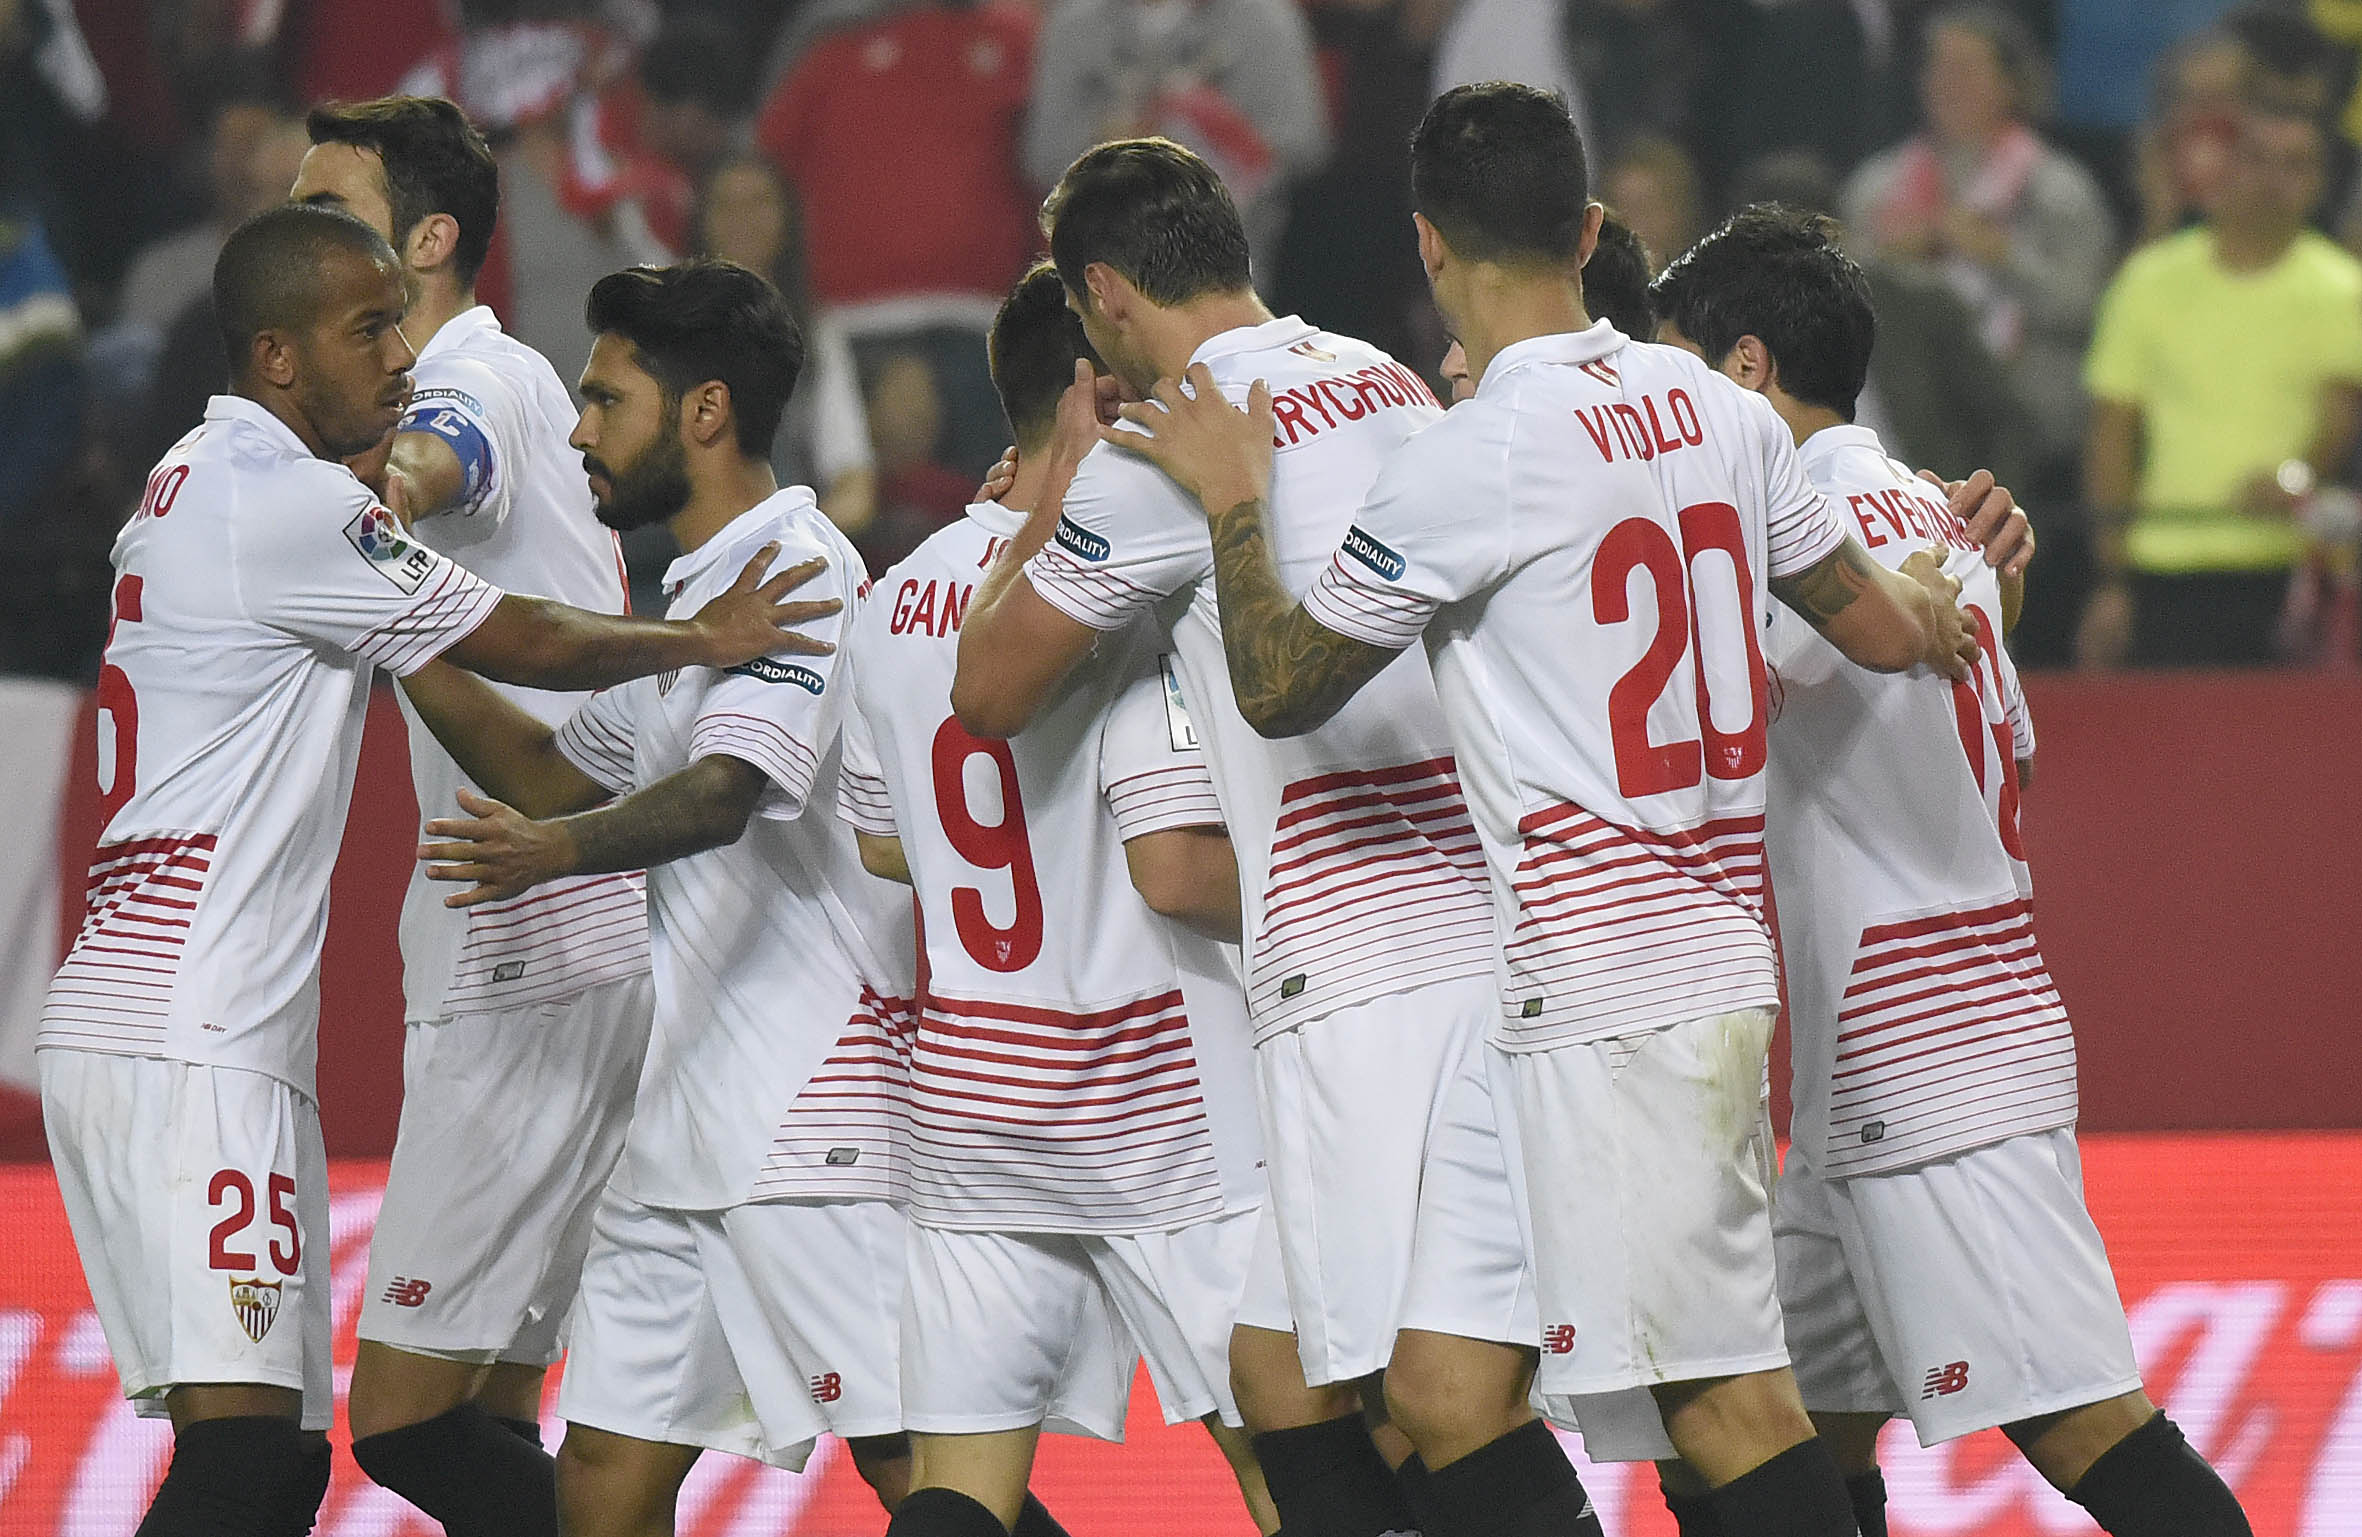 Jugadores del Sevilla FC festejan el gol de Gameiro